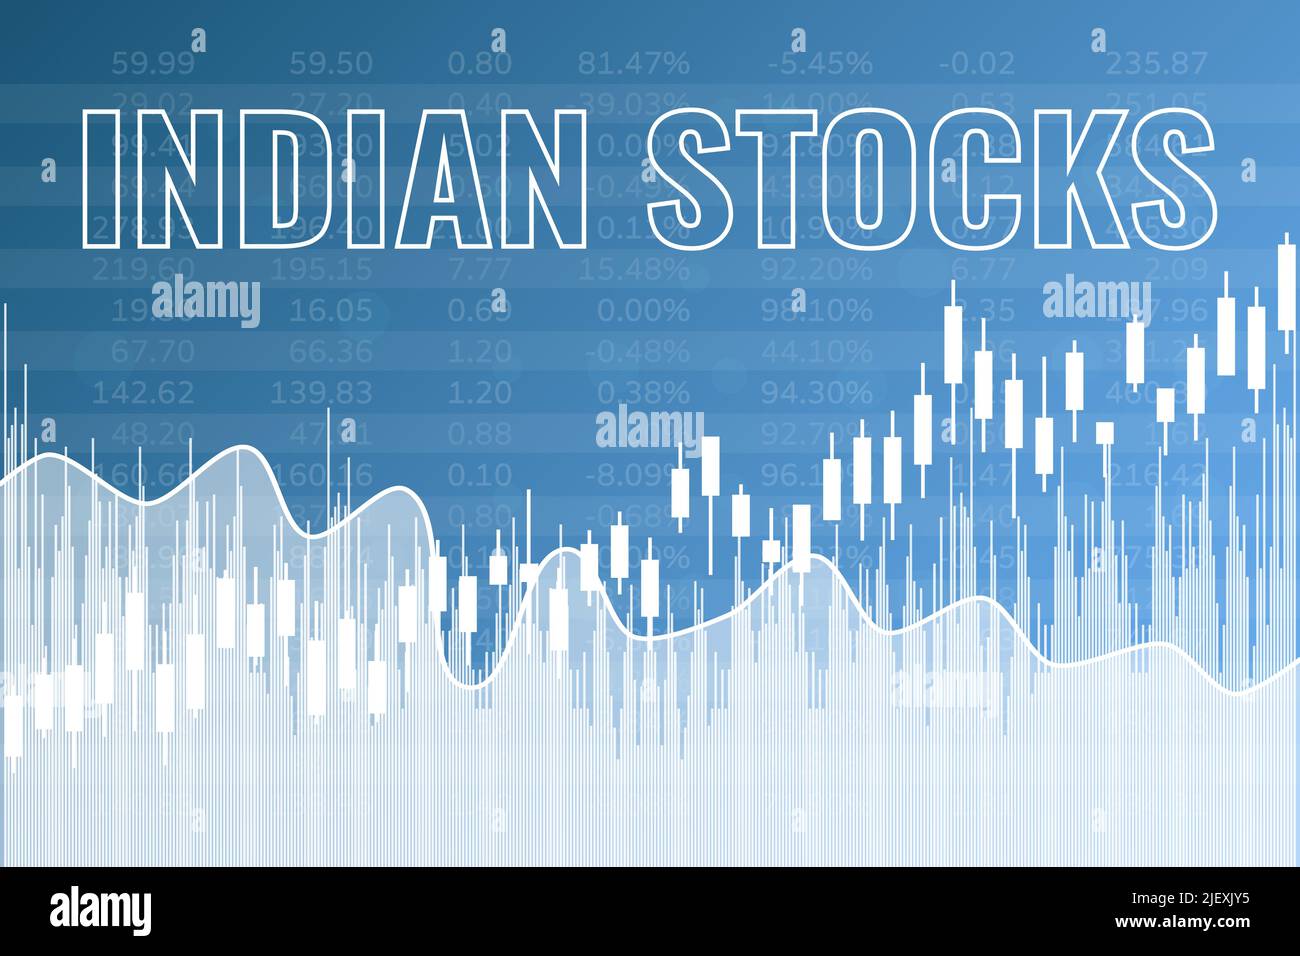 Mots Indian stocks sur fond bleu de finance Illustration de Vecteur